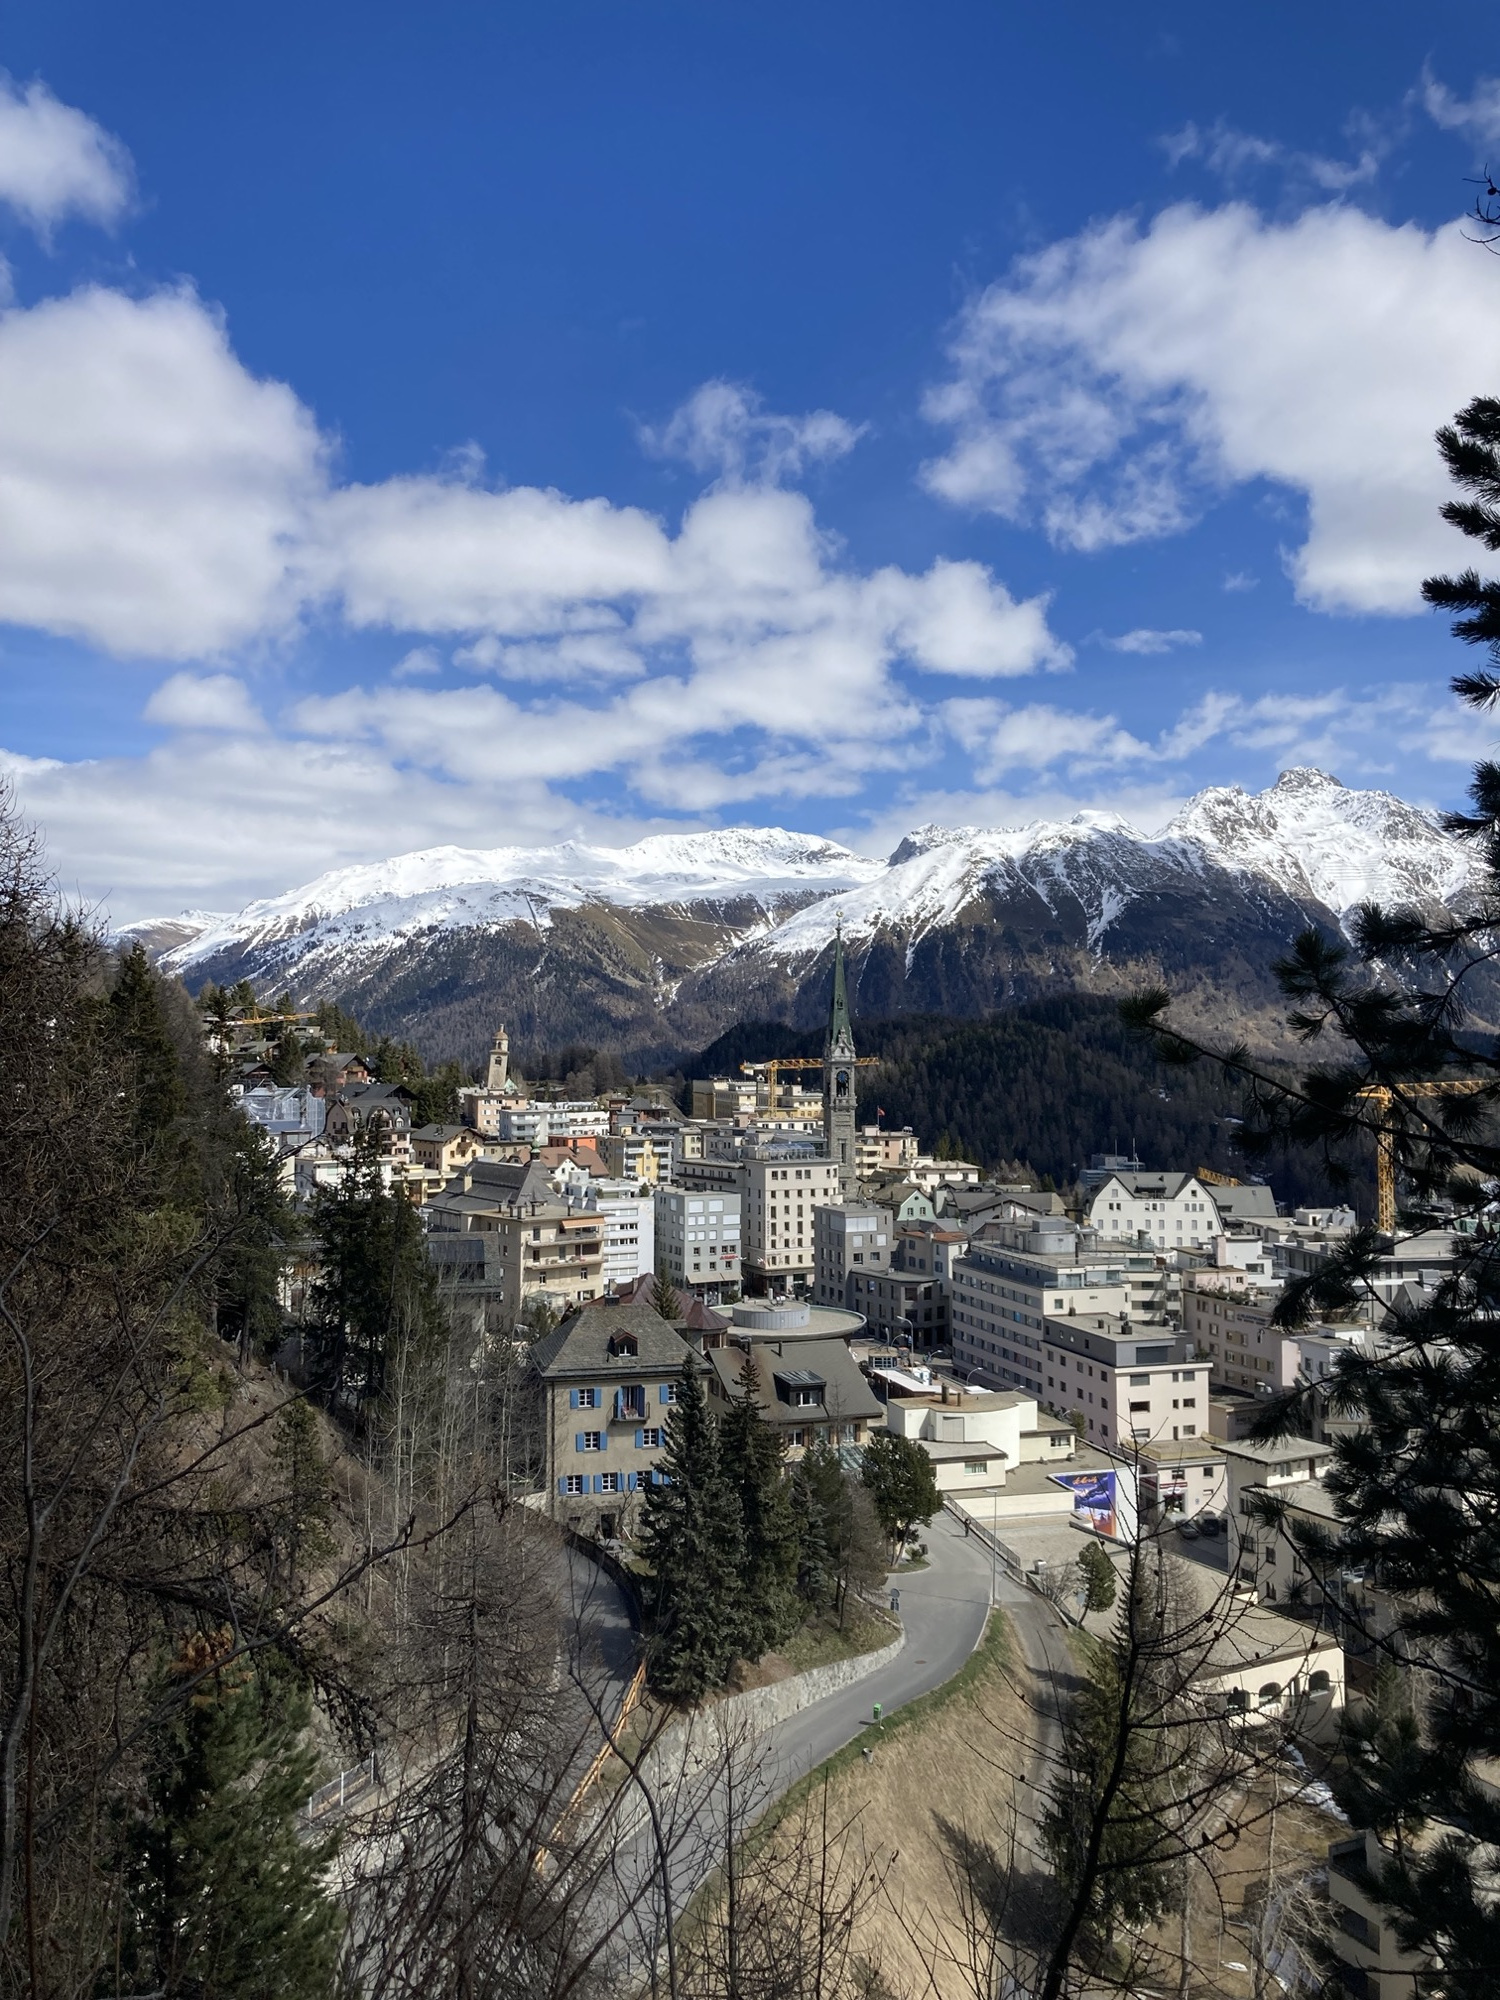 Überblick über die Stadt St. Moritz, der Kirchturm, der schiefe Turm und ein Baukran überragen die vielen Hotelgebäude, im Hintergrund eine Bergkette mit schneebedeckten Gipfeln und leicht bewölkter Himmel